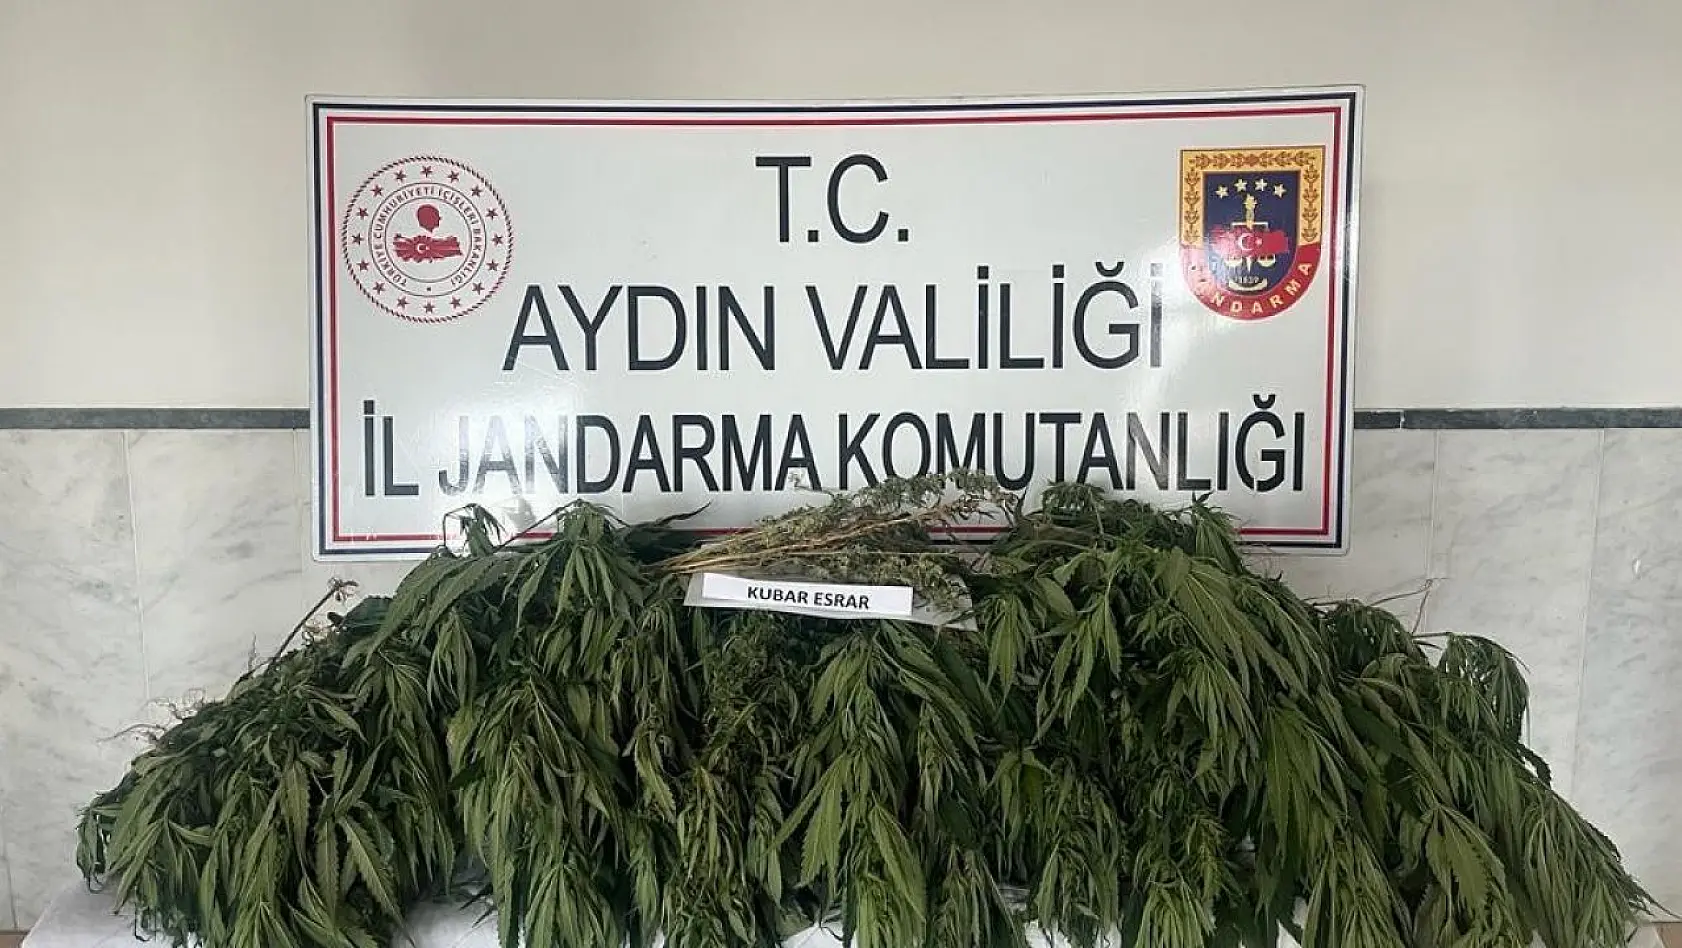 Aydın'da uyuşturucu ile mücadelede bir haftada 7 kişi tutuklandı